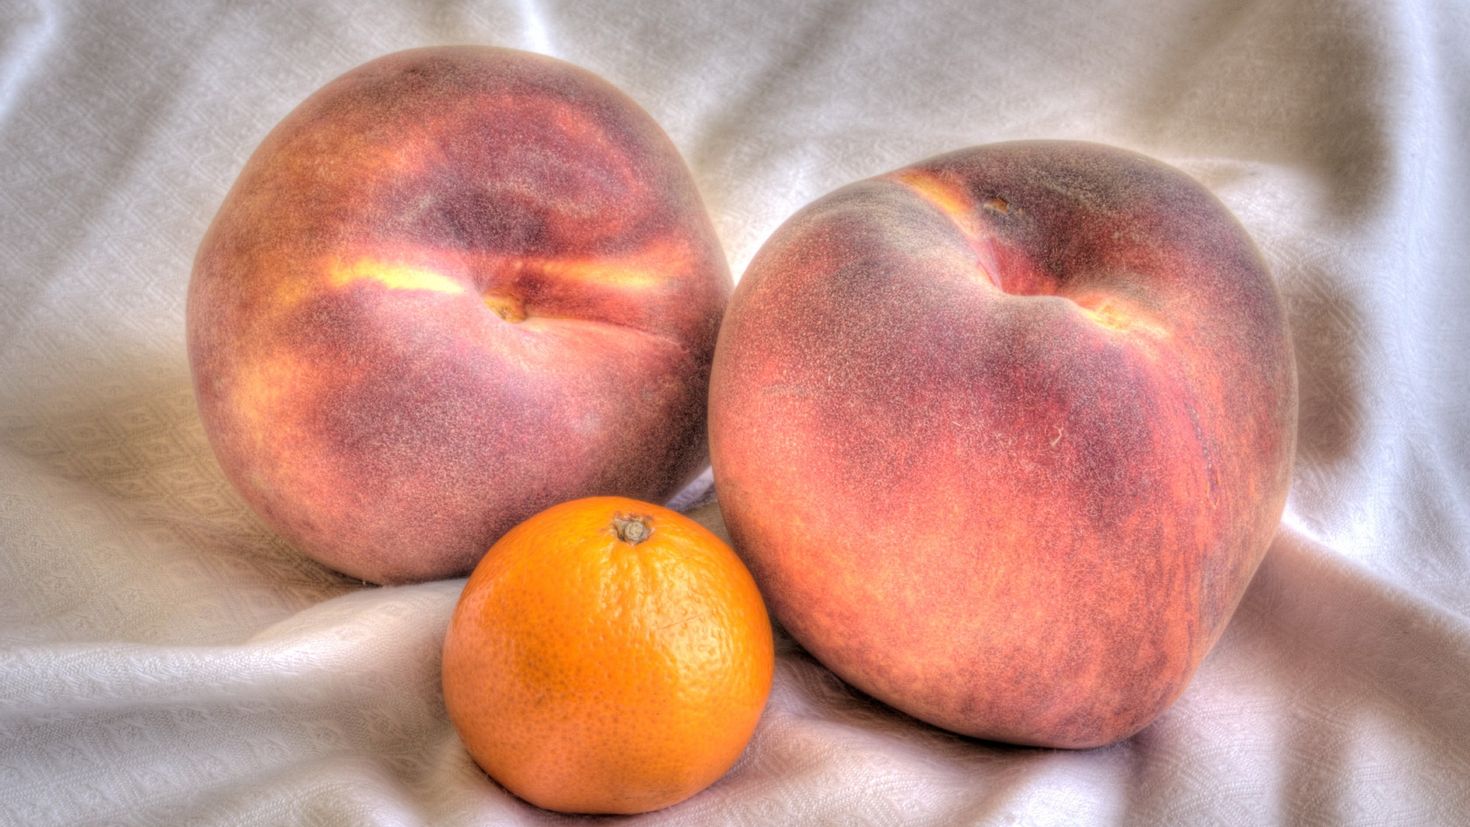 2 11 всех фруктов составляют персики сколько. Персик нектарин абрикос. Нектарин мандарин. Фрукты персики мандарины. Абрикос хурма персик.